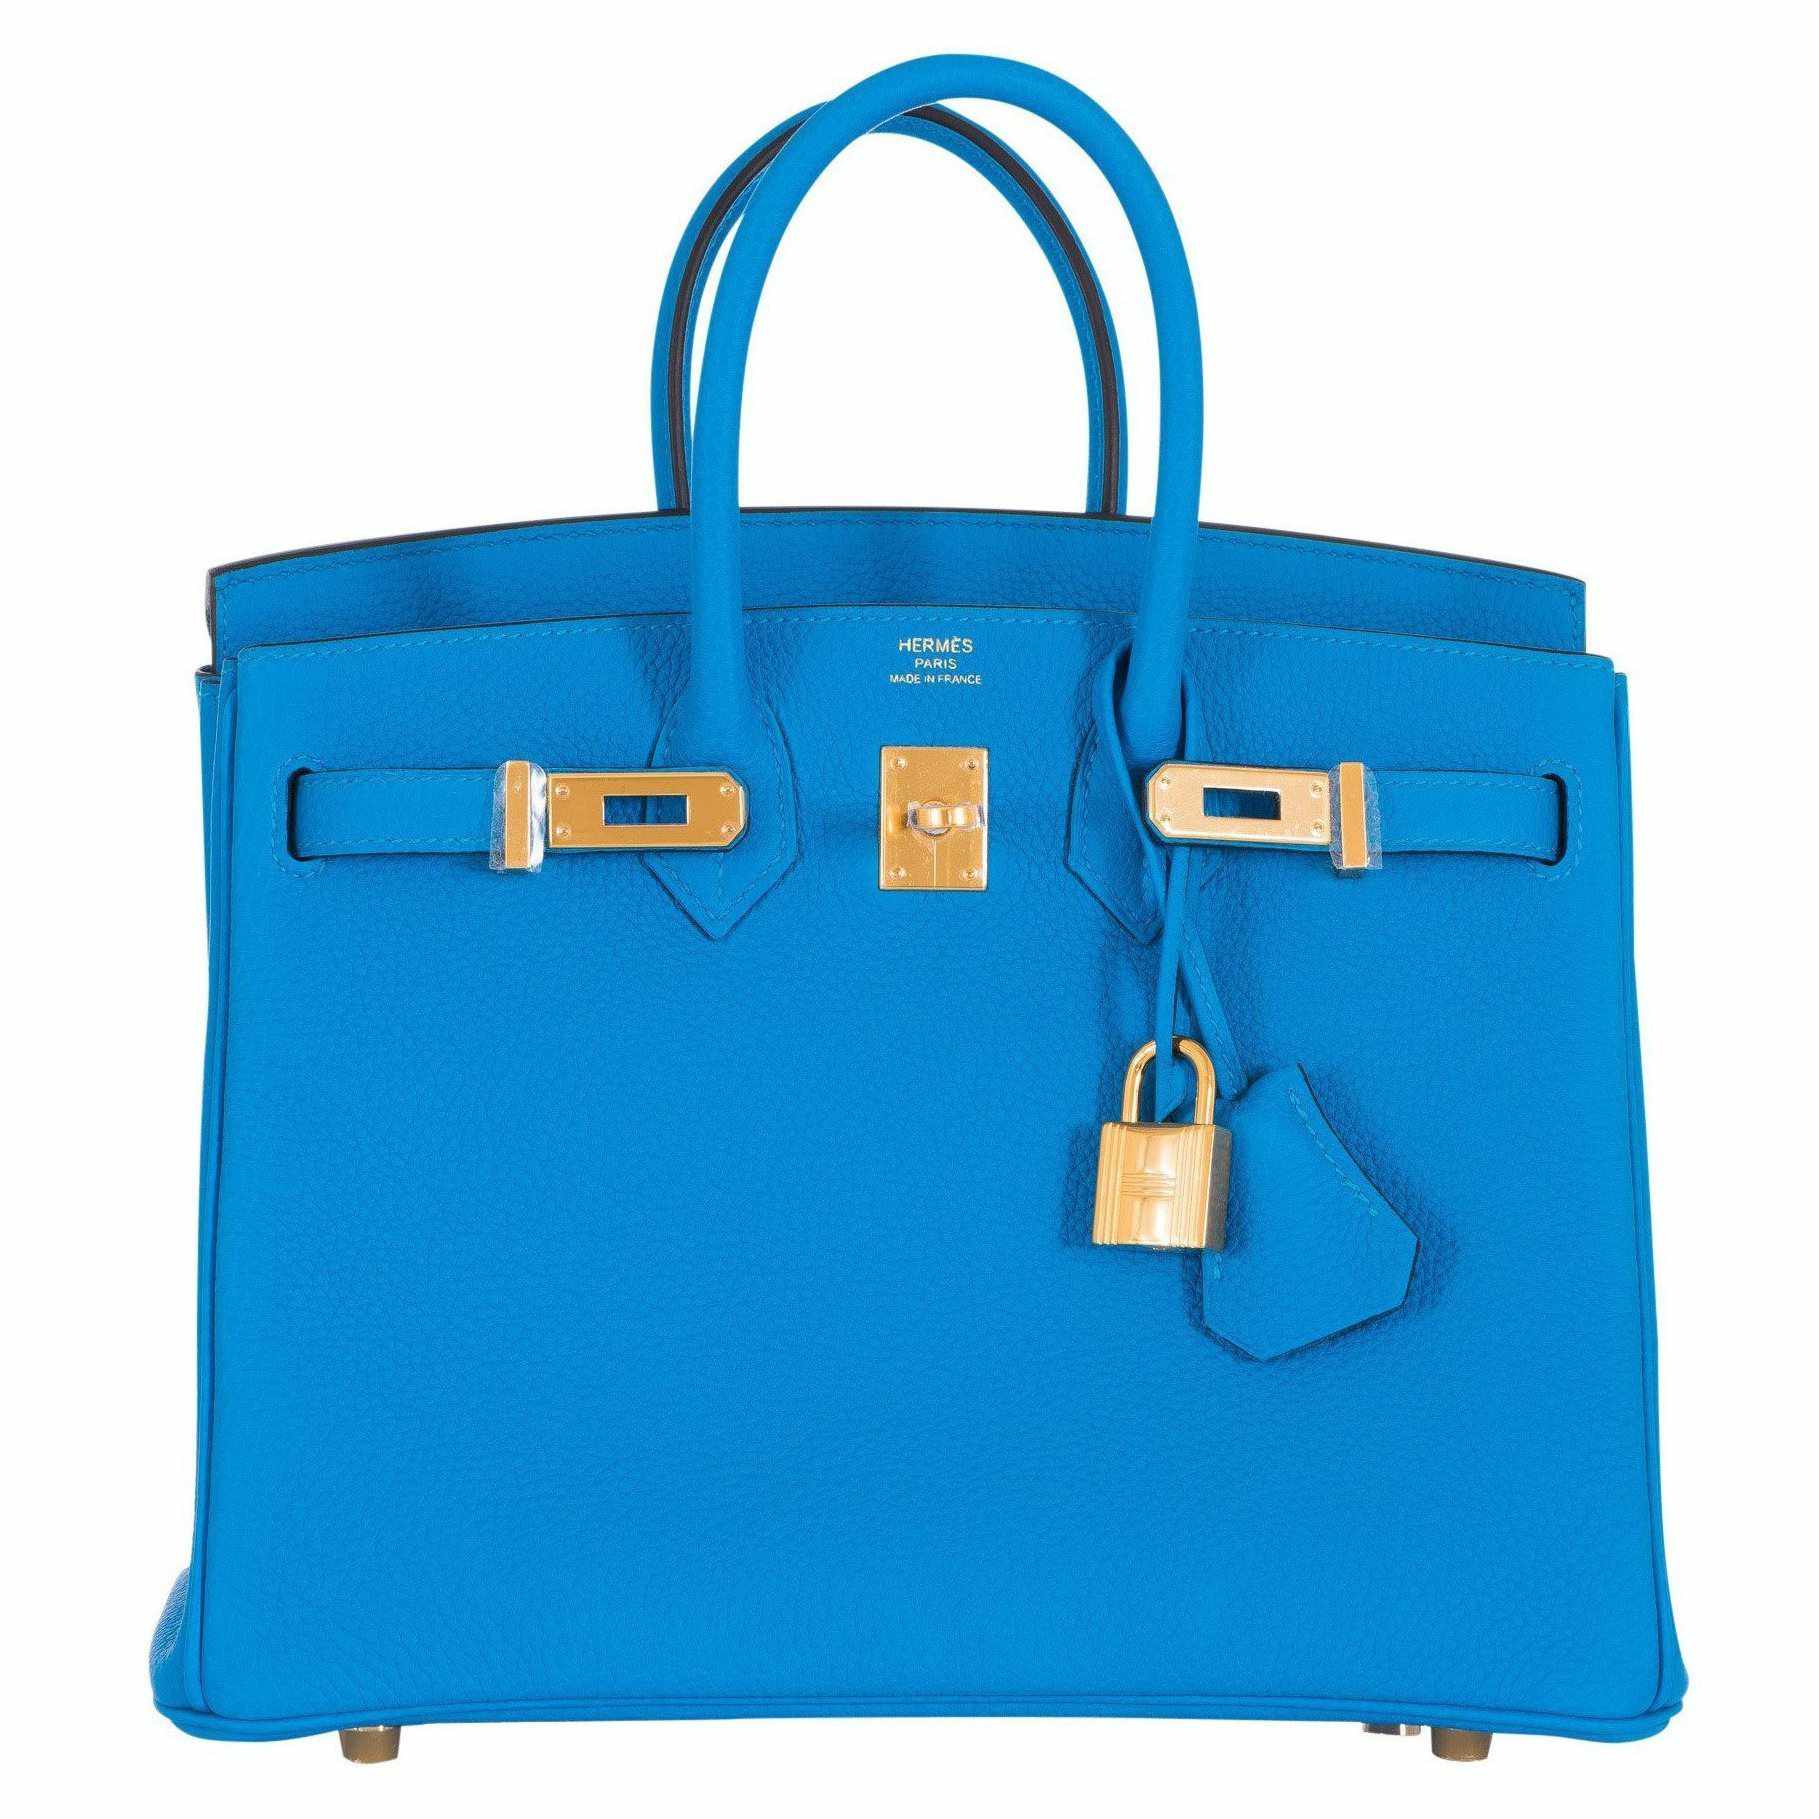 Hermes Birkin 25 Blue Zanzibar Togo Leather Gold Hardware Handbag